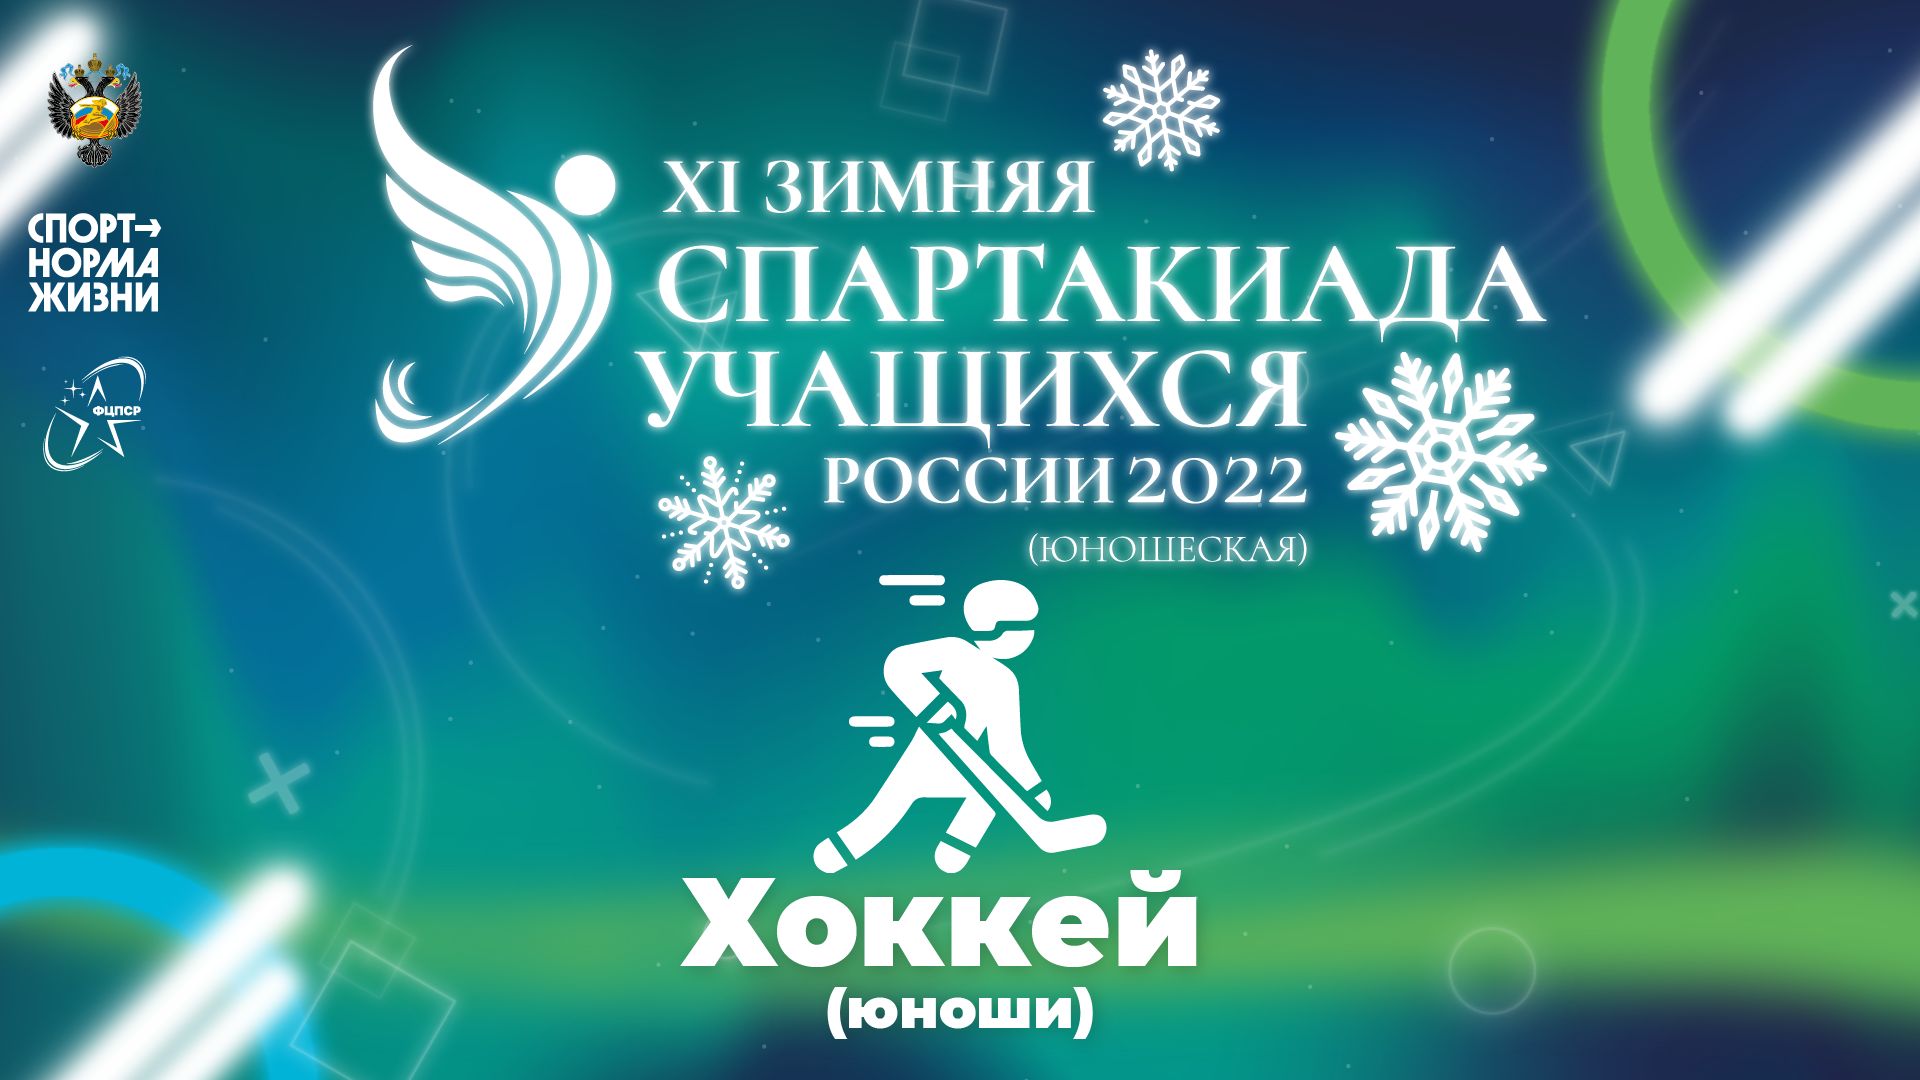 XI зимняя Спартакиада учащихся России 2022 года. Хоккей (Салават)